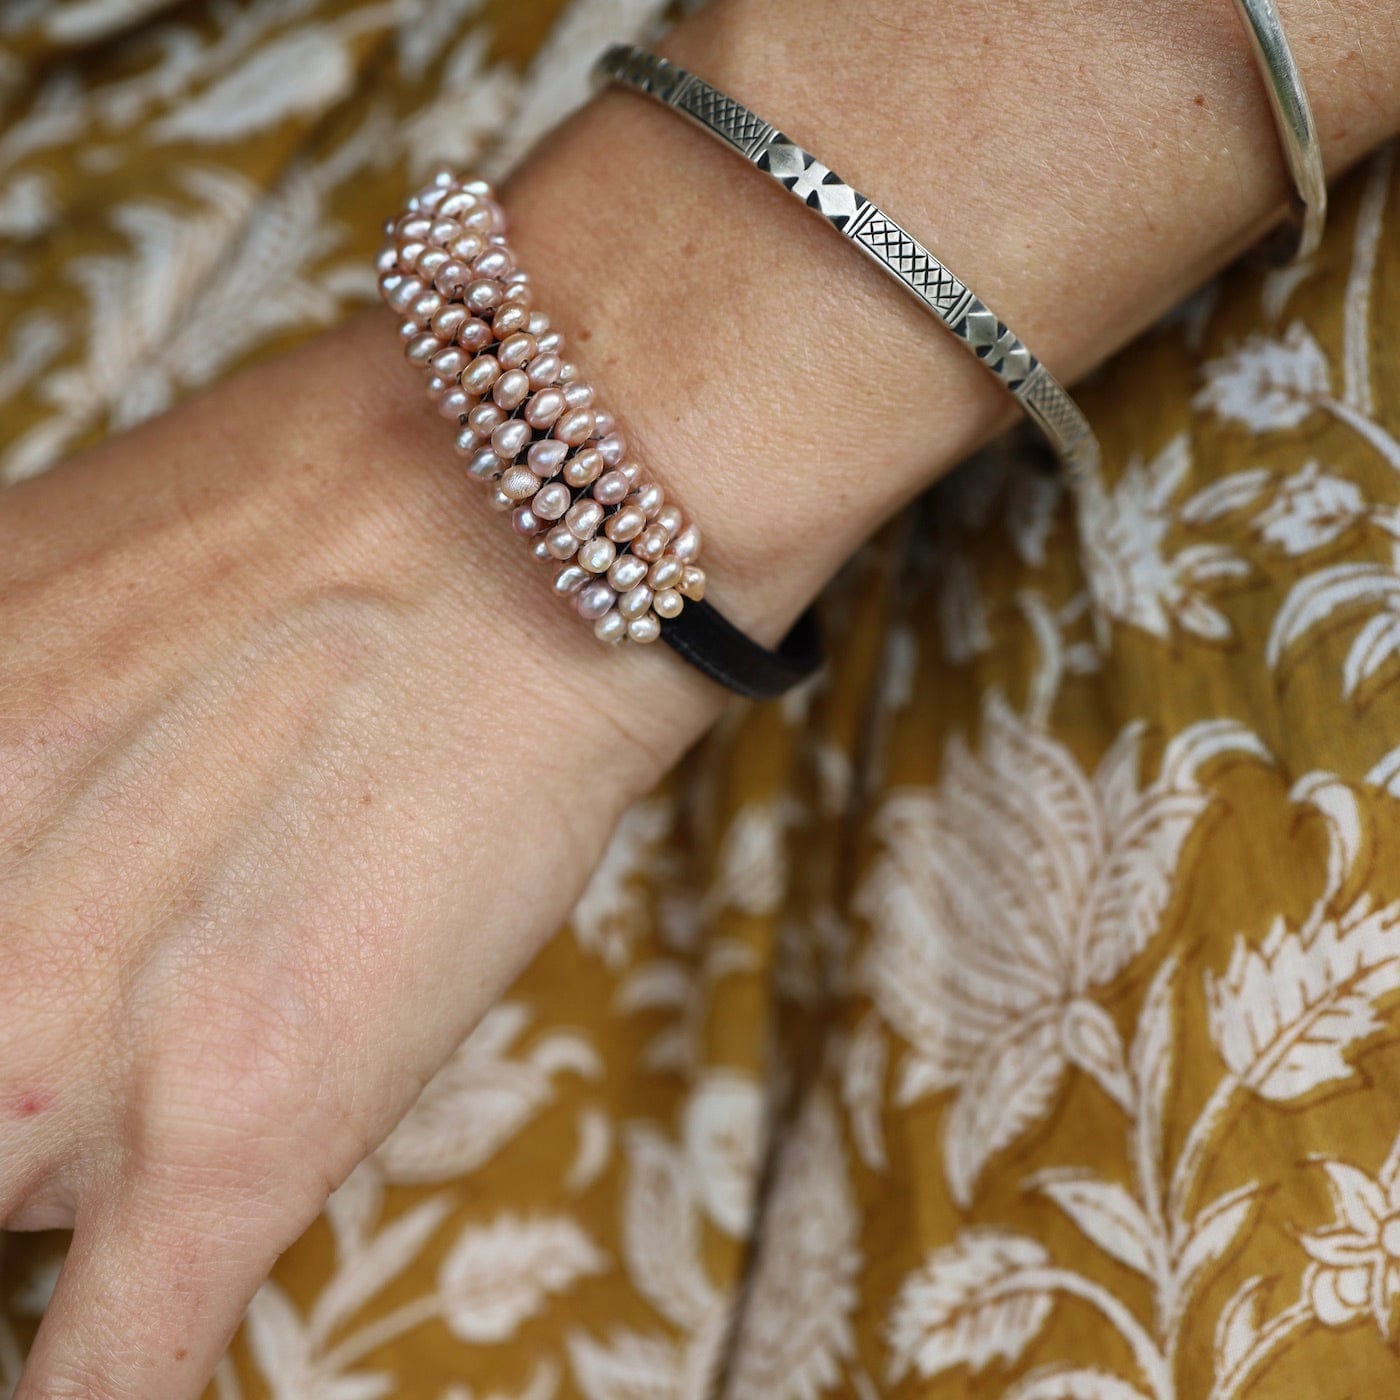 BRC-JM Hand Stitched Pink Pearls on 5mm Vintage Black Leather Bracelet